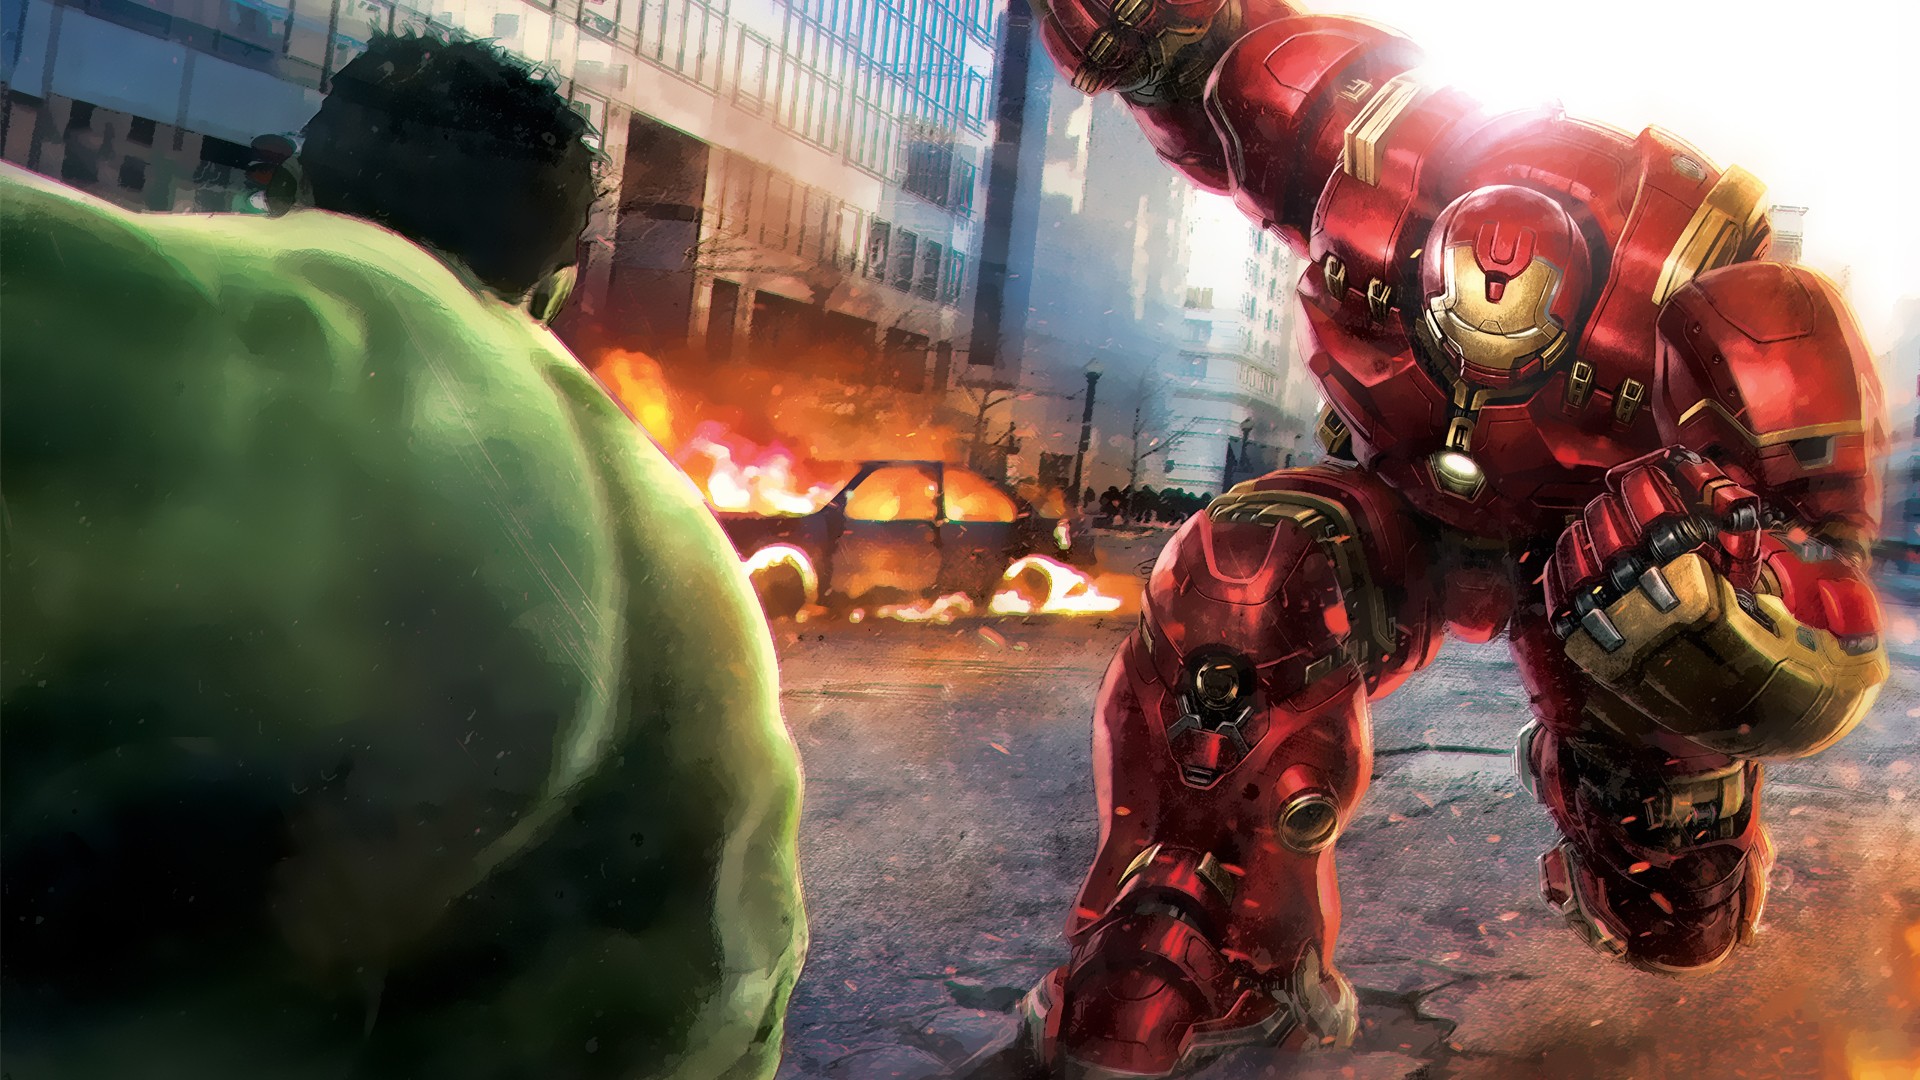 Iron Man, Hulk, Avengers: Age of Ultron, Concept art, Battle Wallpaper